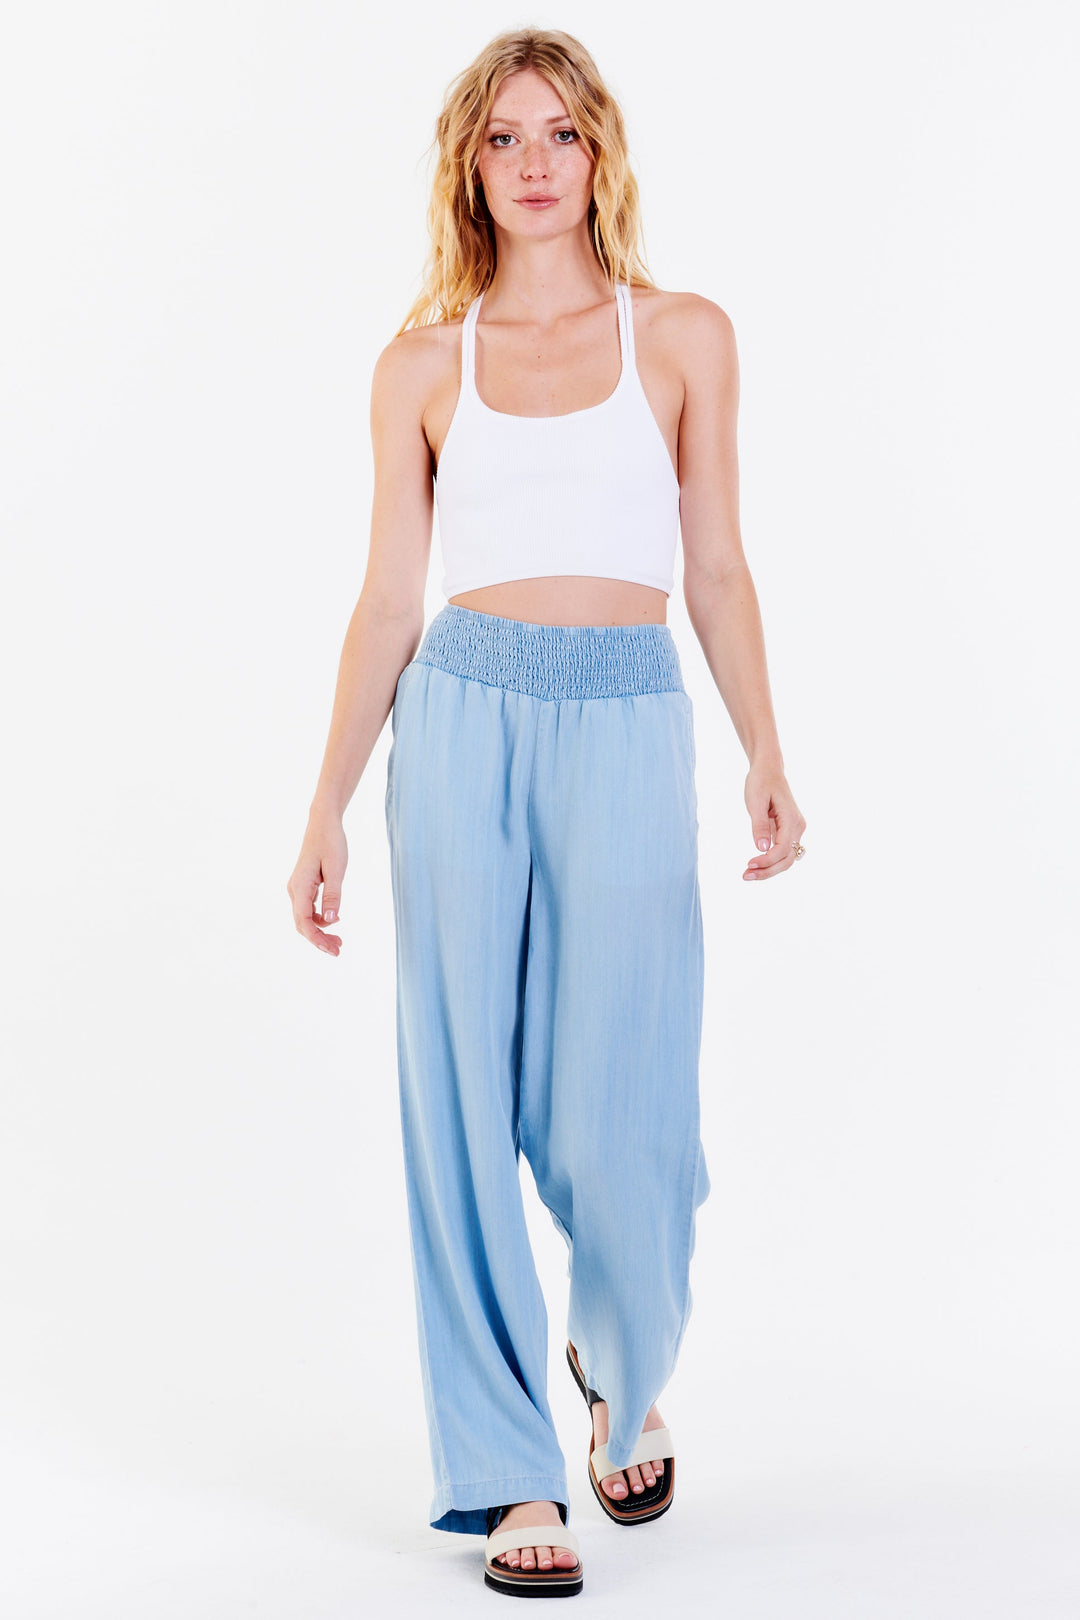 image of a female model wearing a LIZZIE LOUNGE PANTS CAROLINA BLUE DEAR JOHN DENIM 